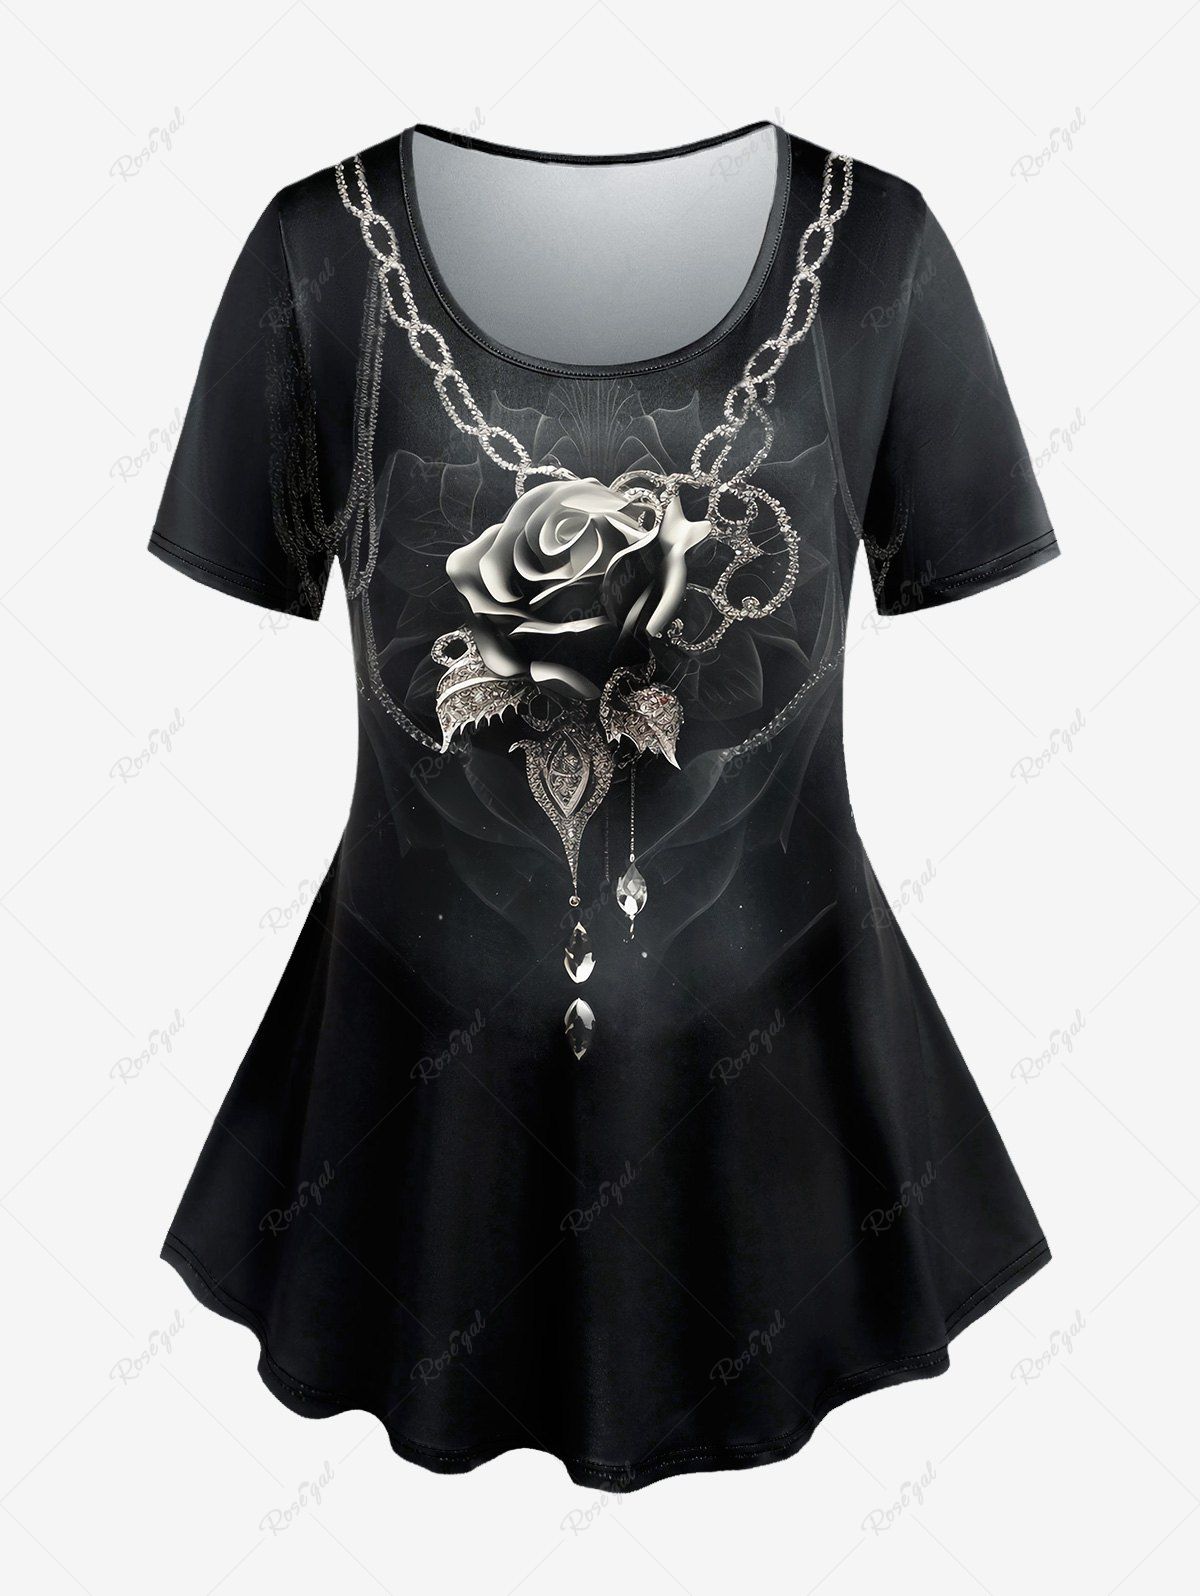 T-shirt Gothique Rose Chaîne Imprimée Noir 5x | US 30-32